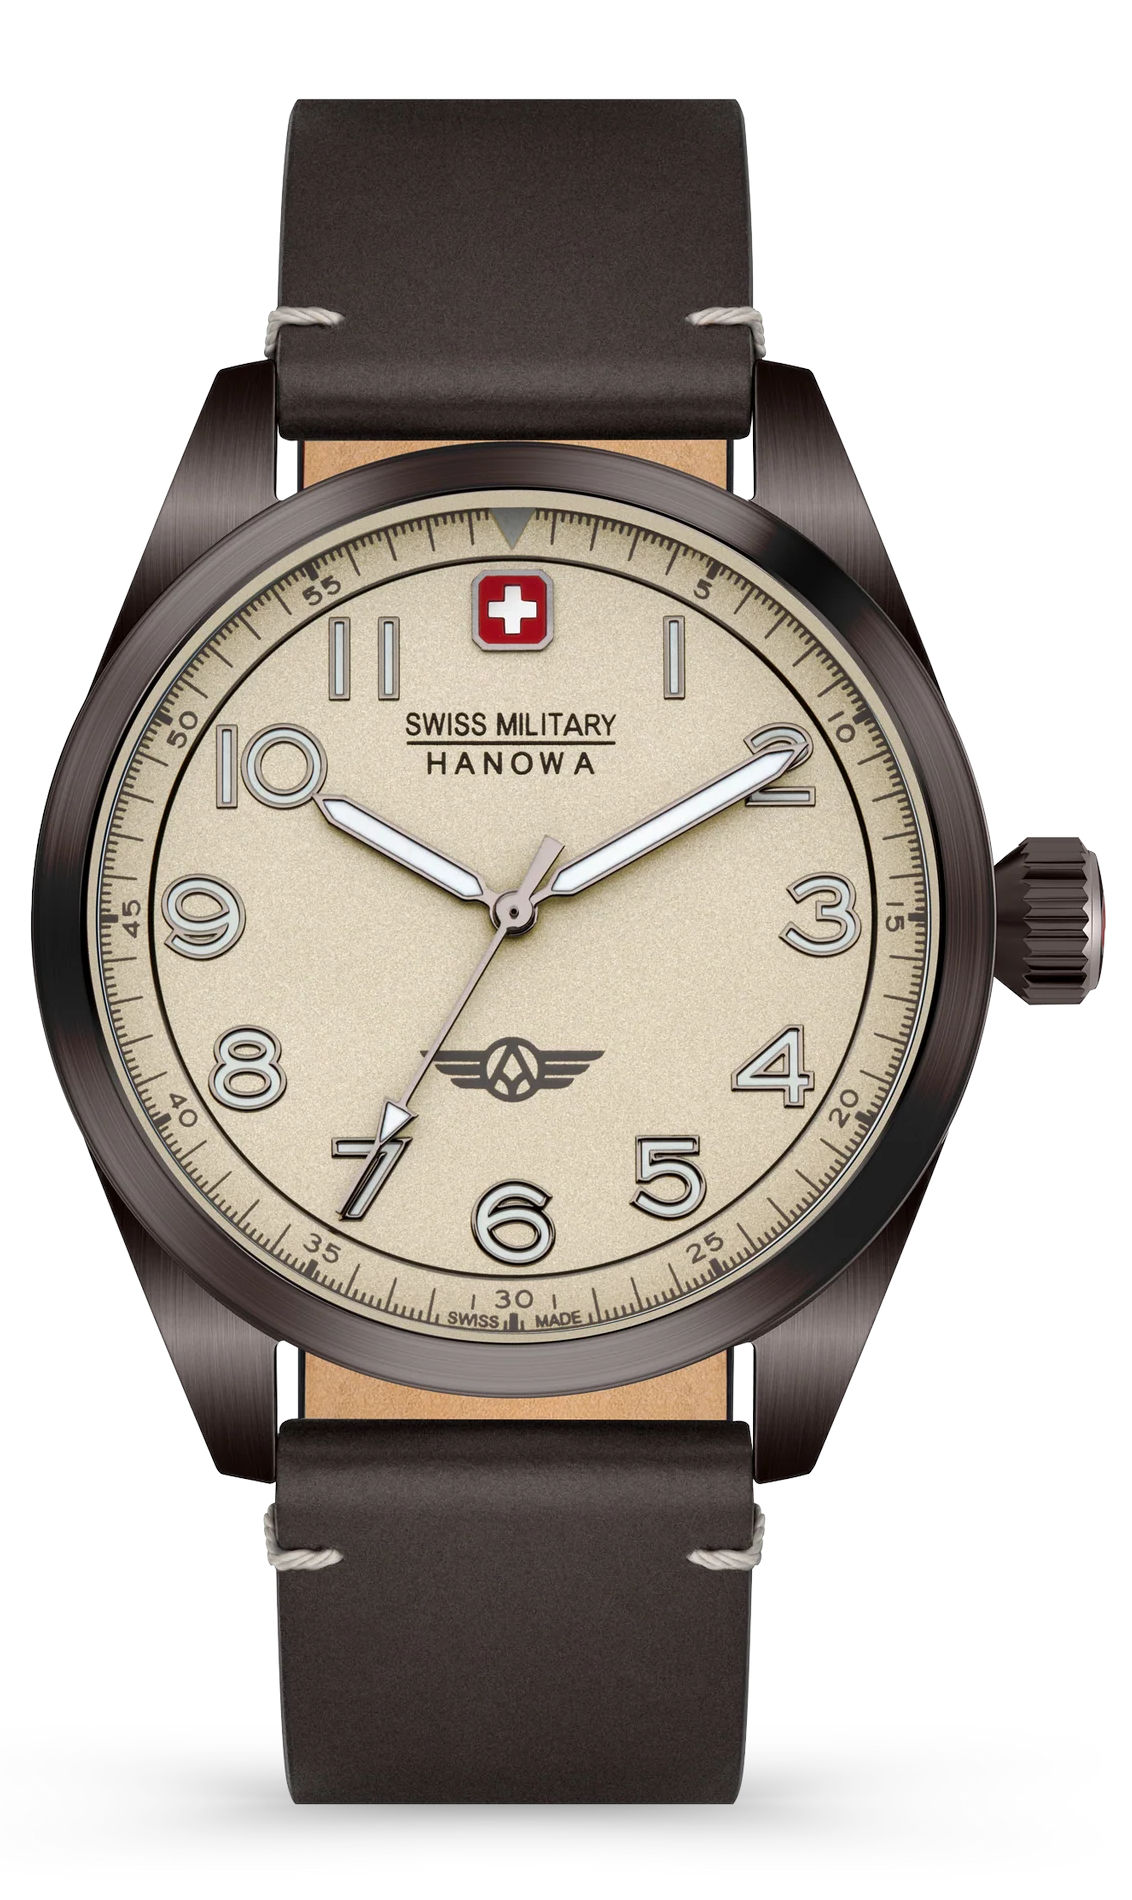  Swiss Military Hanowa SMWGA2100440